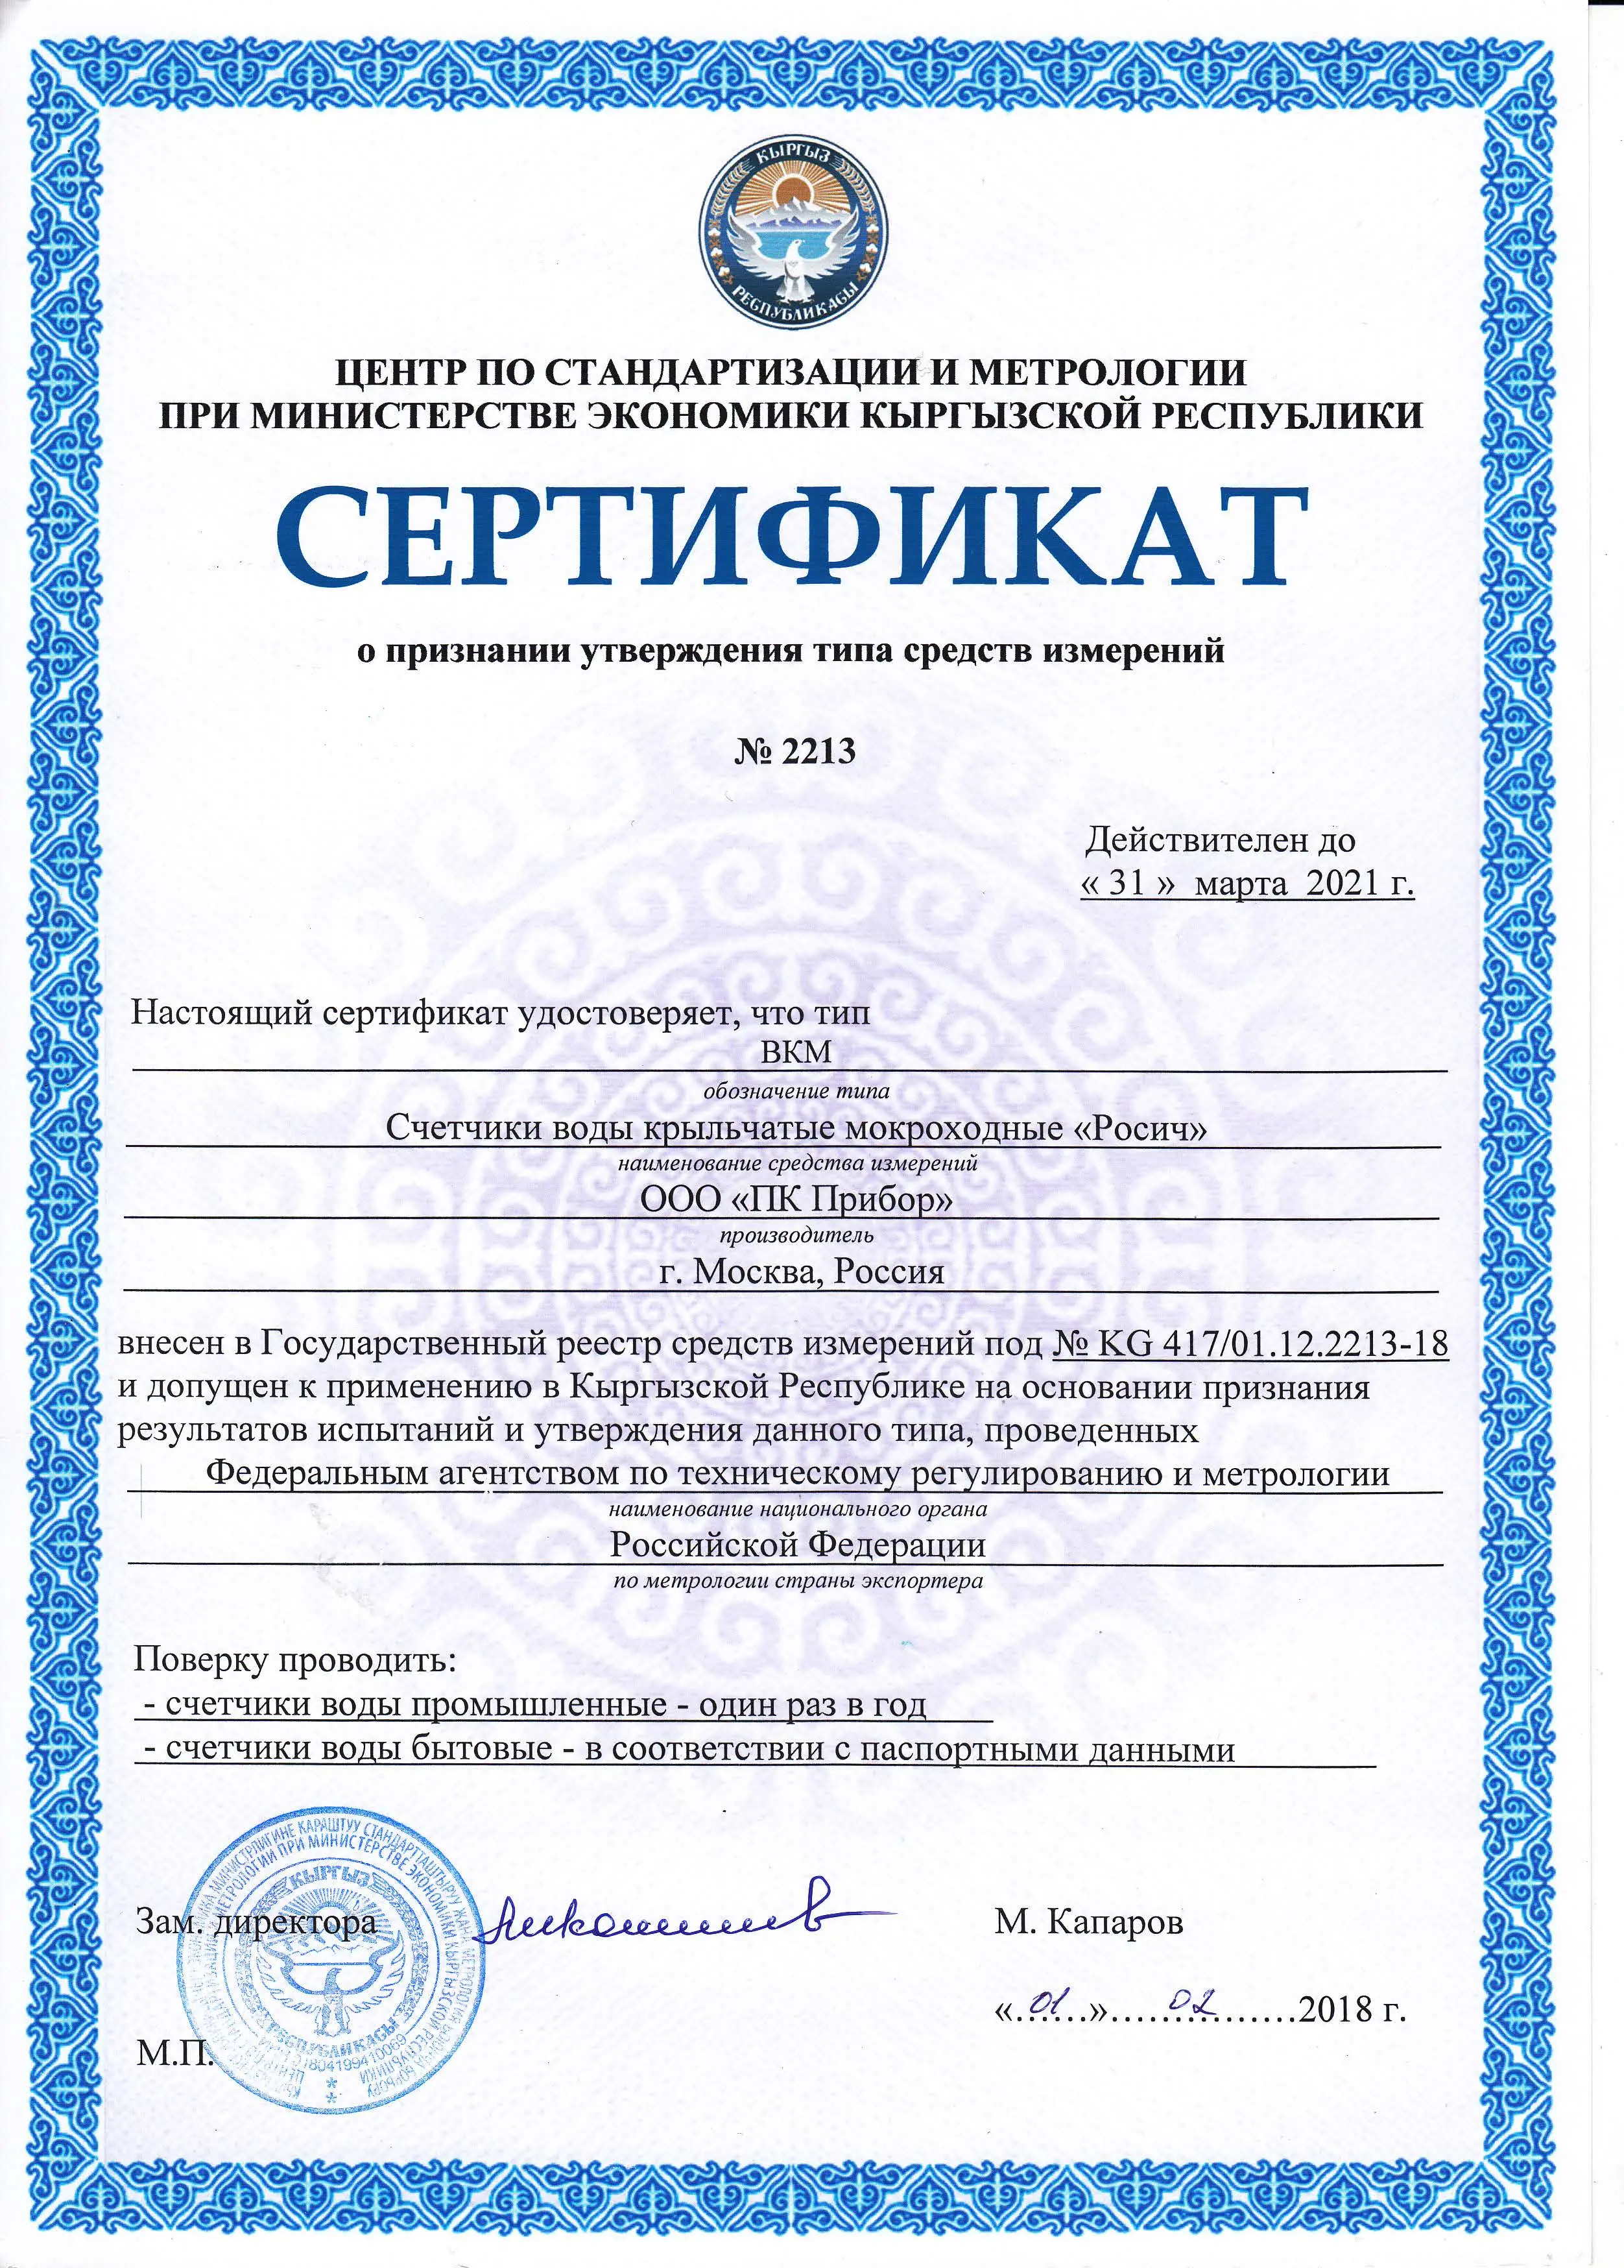 Сертификат о признании утверждения типа средств измерений ВКМ, Киргизия, до 31.03.2021 (архив)